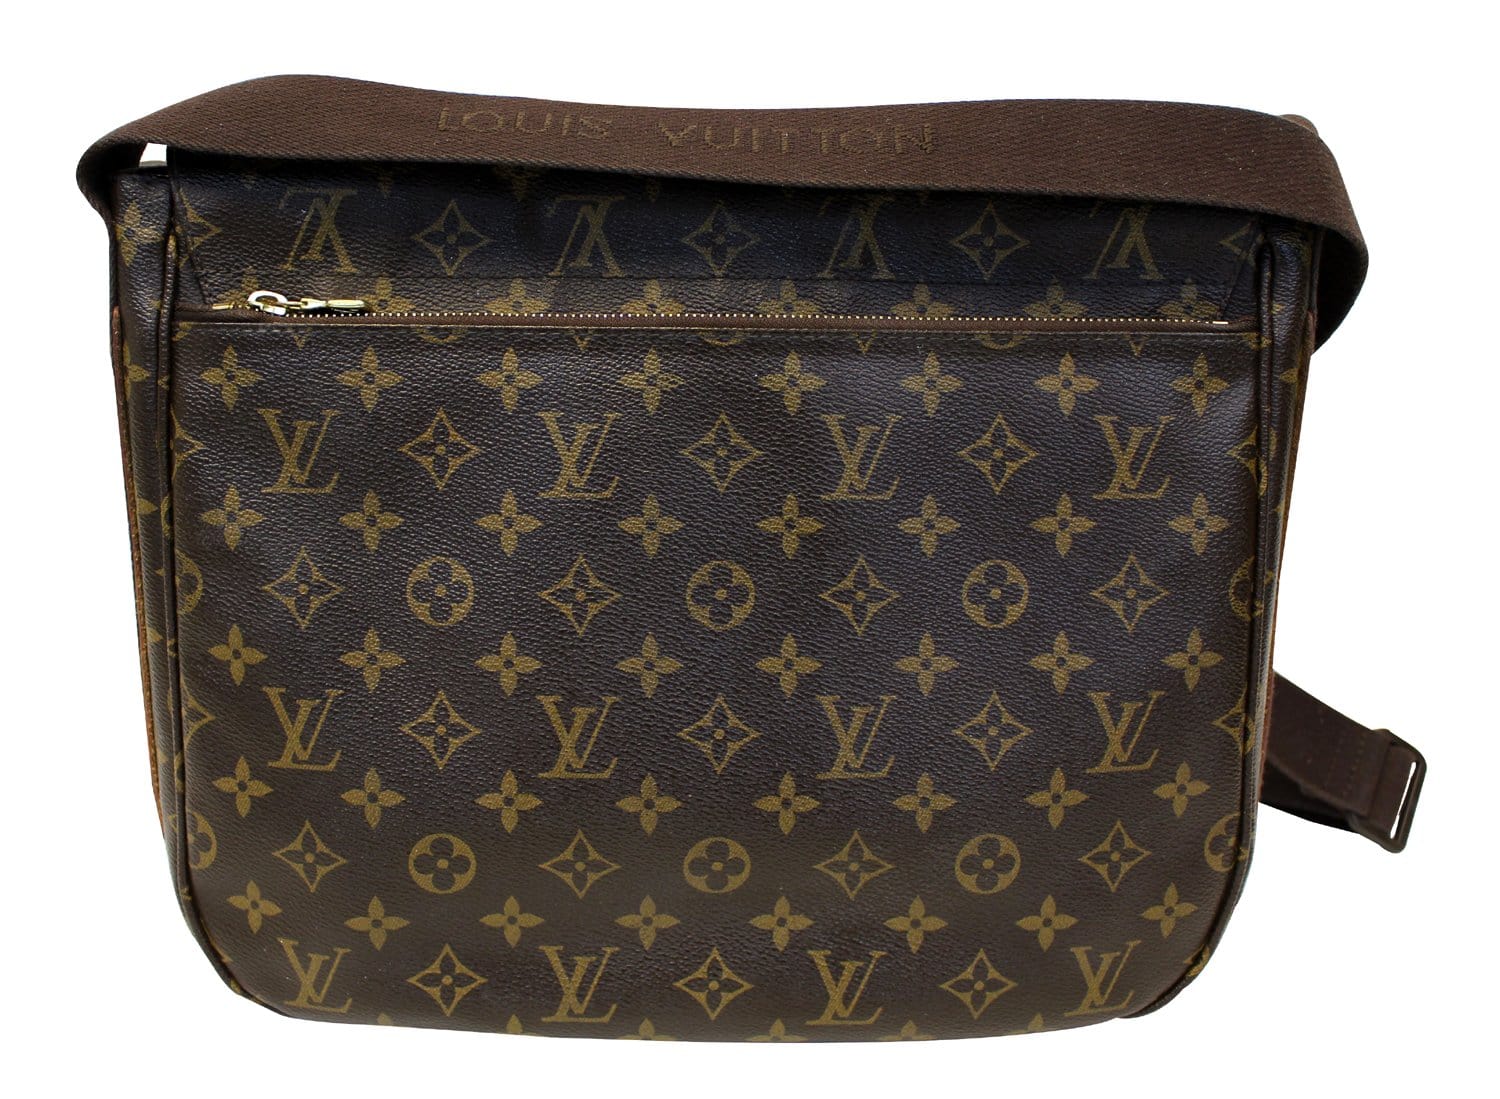 Louis Vuitton crossbody bag $775 #louisvuitton #lvmessenger